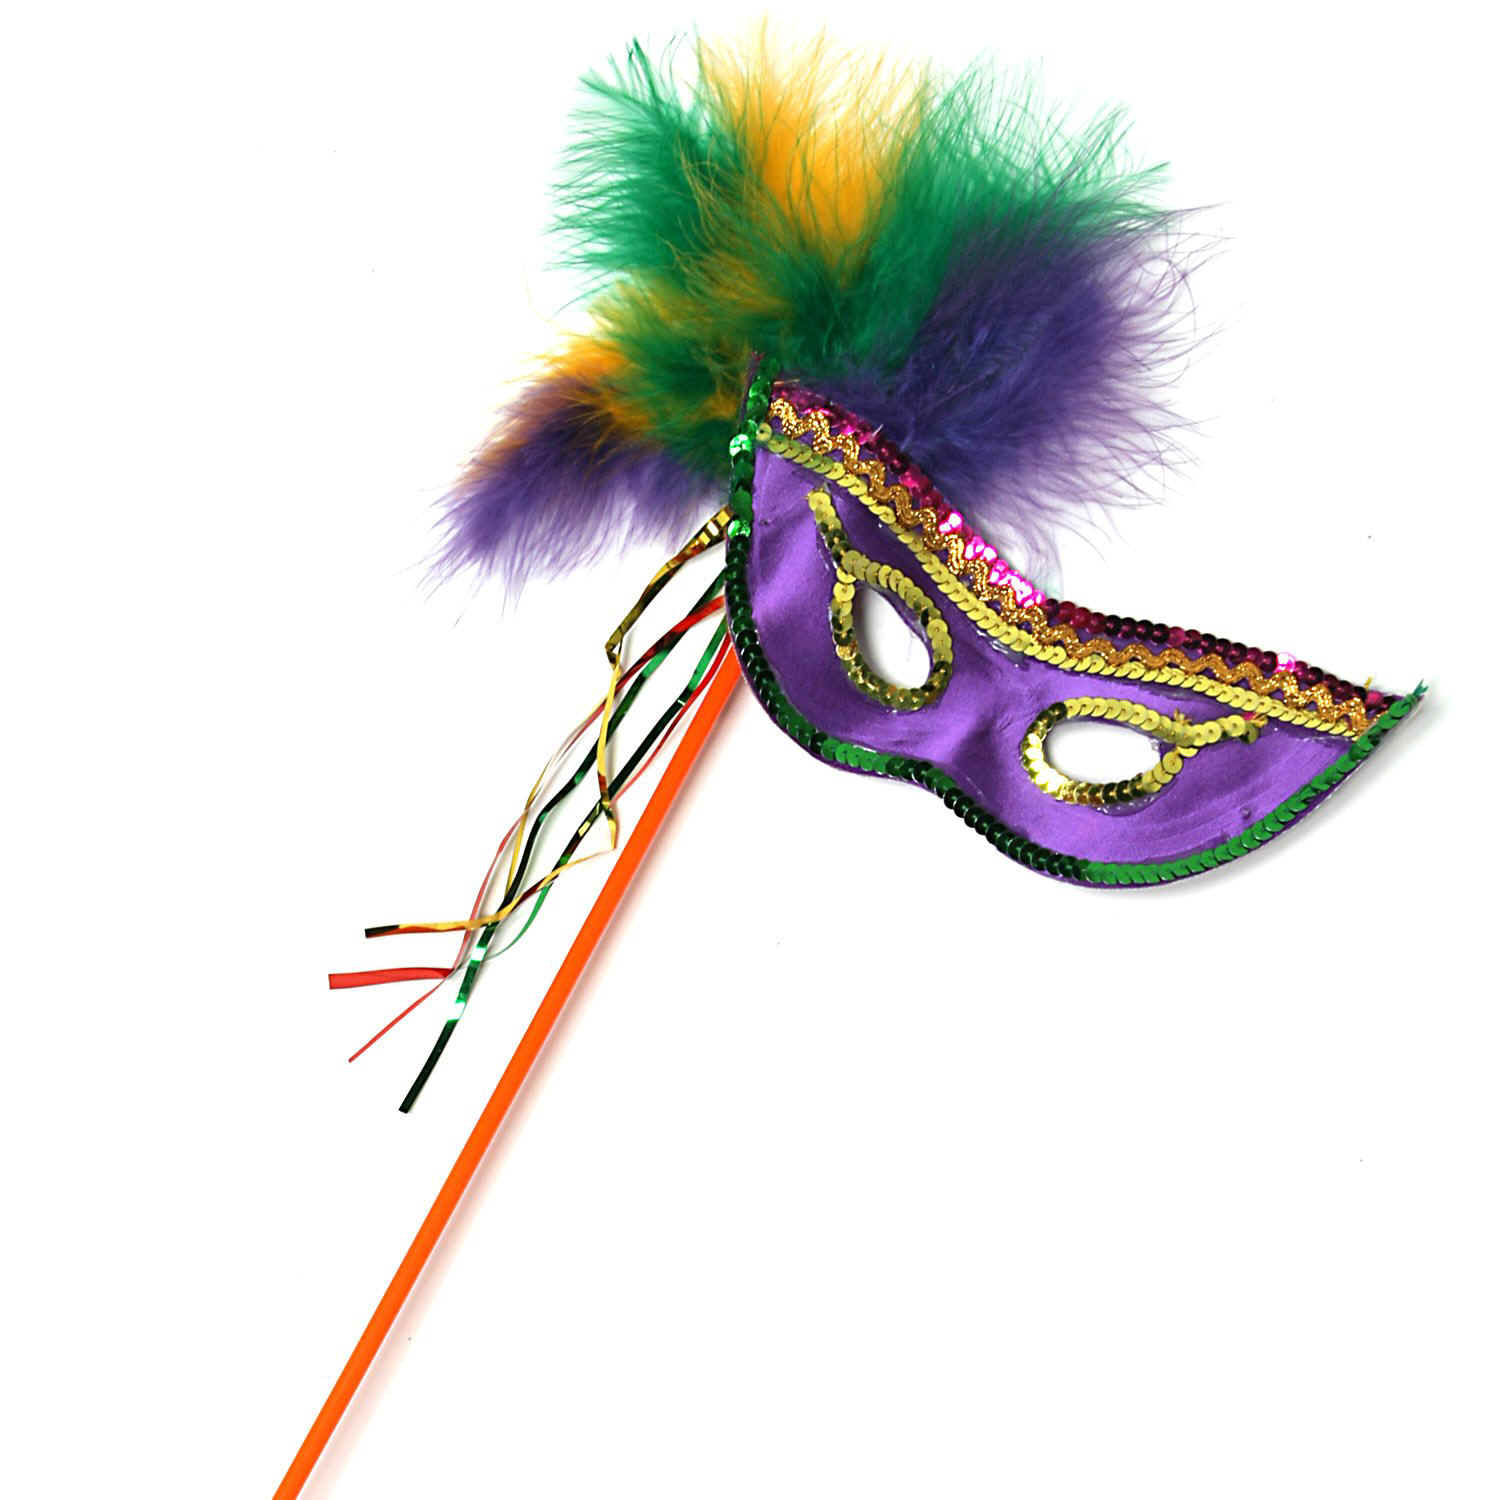 ik draag kleding B olie Geheugen Zelf carnaval masker maken - Hobby.blogo.nl